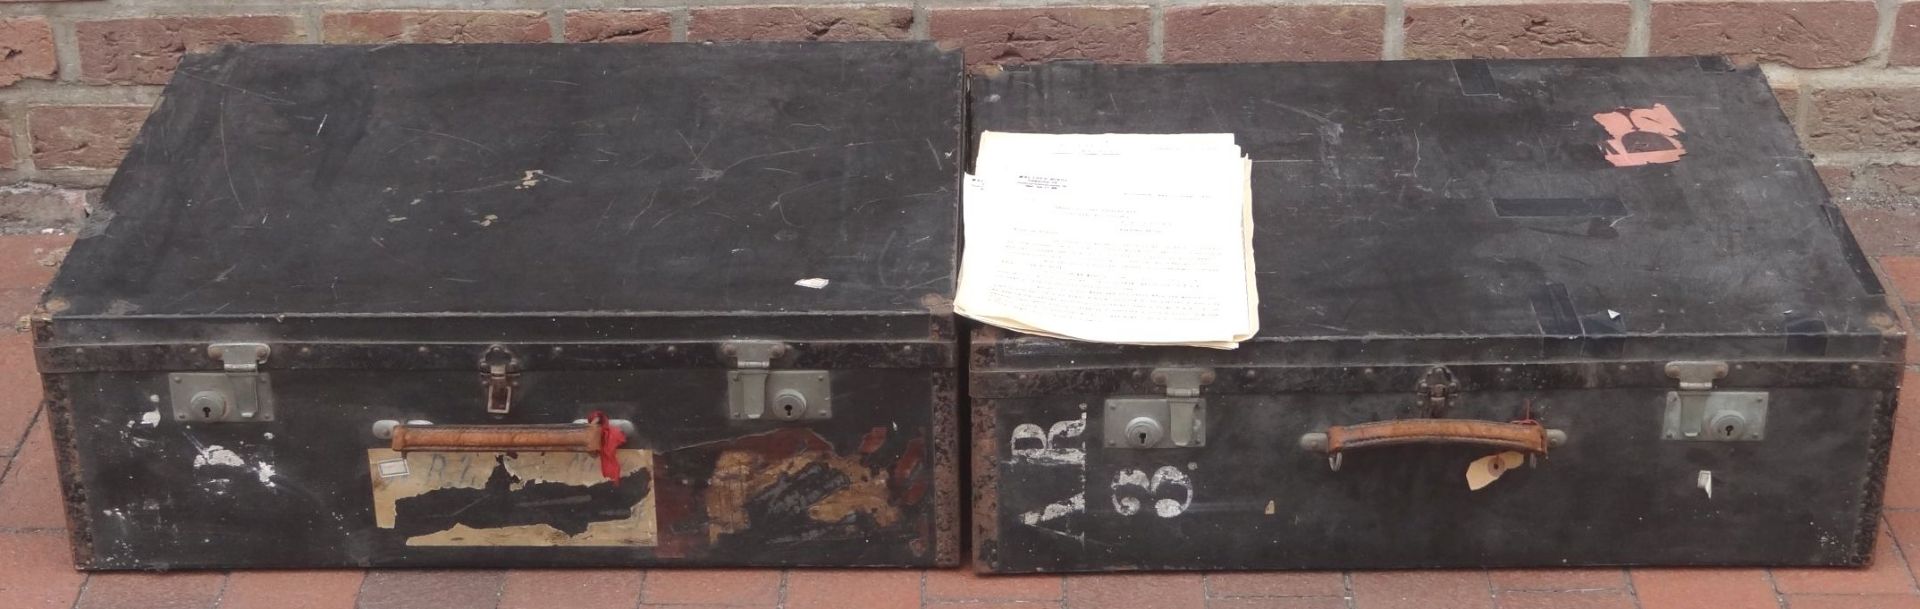 2 gr. Koffer (max. 20x70x50 cm) sowie div. Papiere der Fa. Walter Minde, Hamburg, Vetreter für